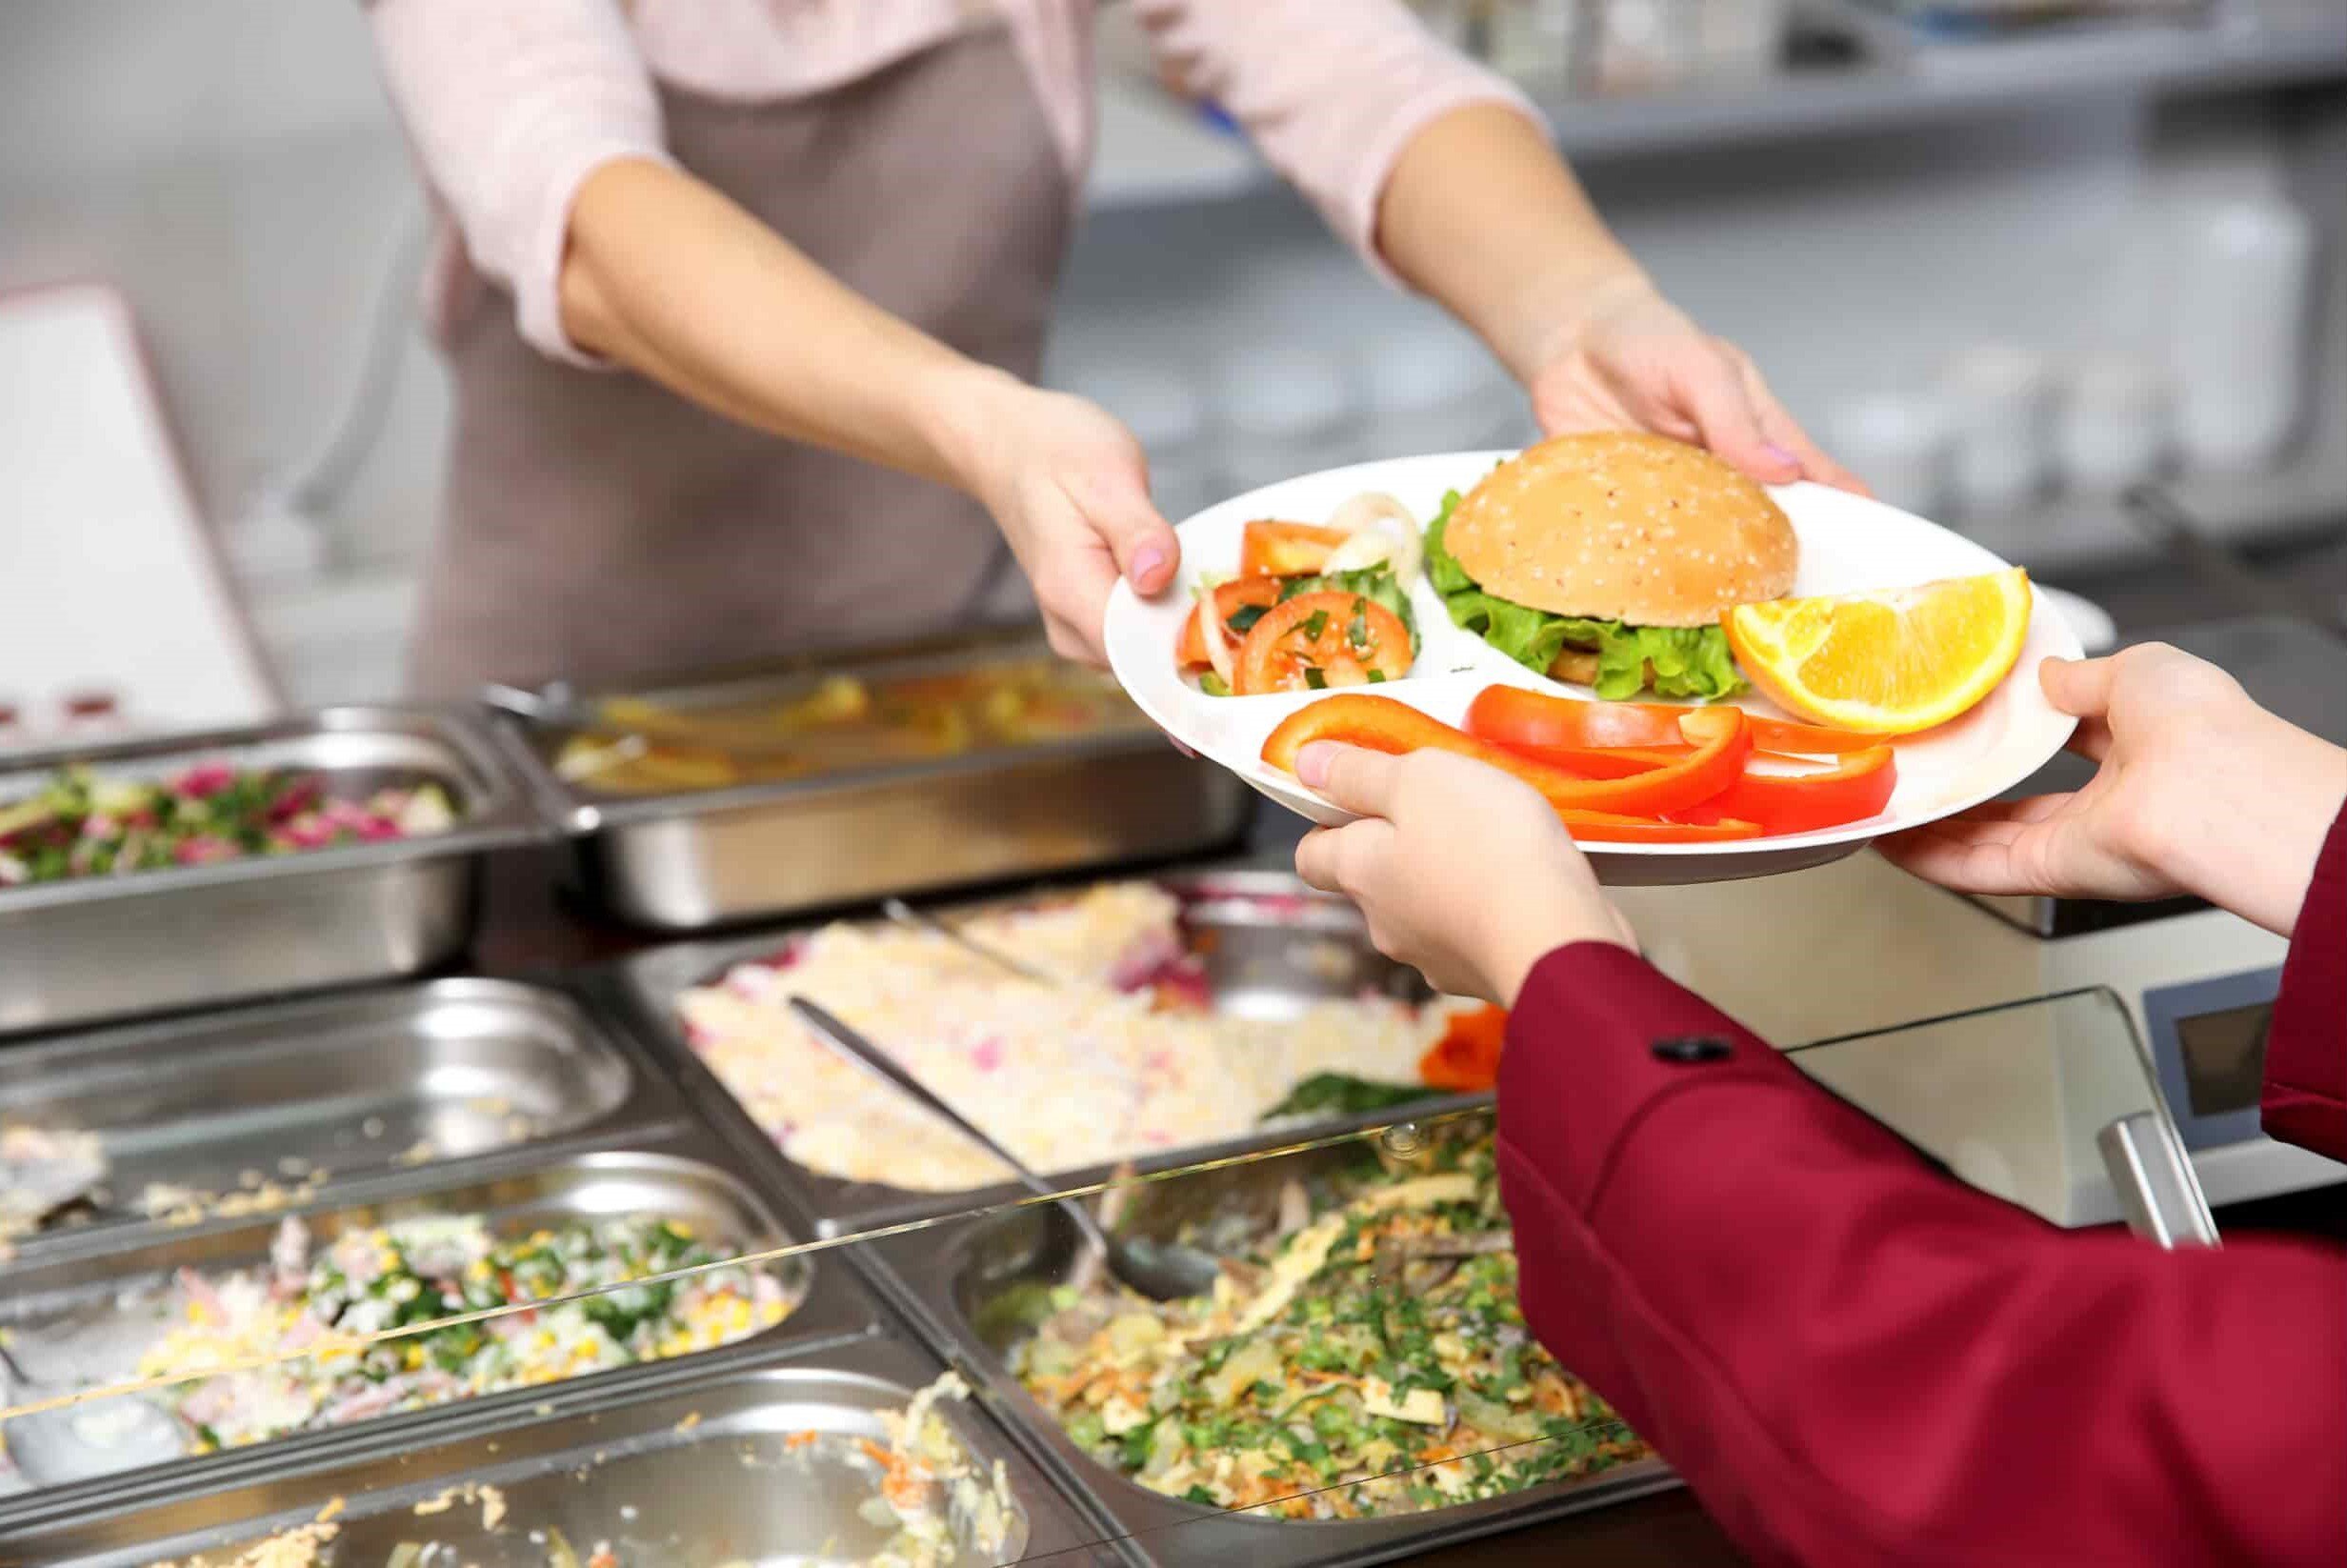 personal de servicio sirve una bandeja de alimentos a un colaborador en el comedor de la empresa